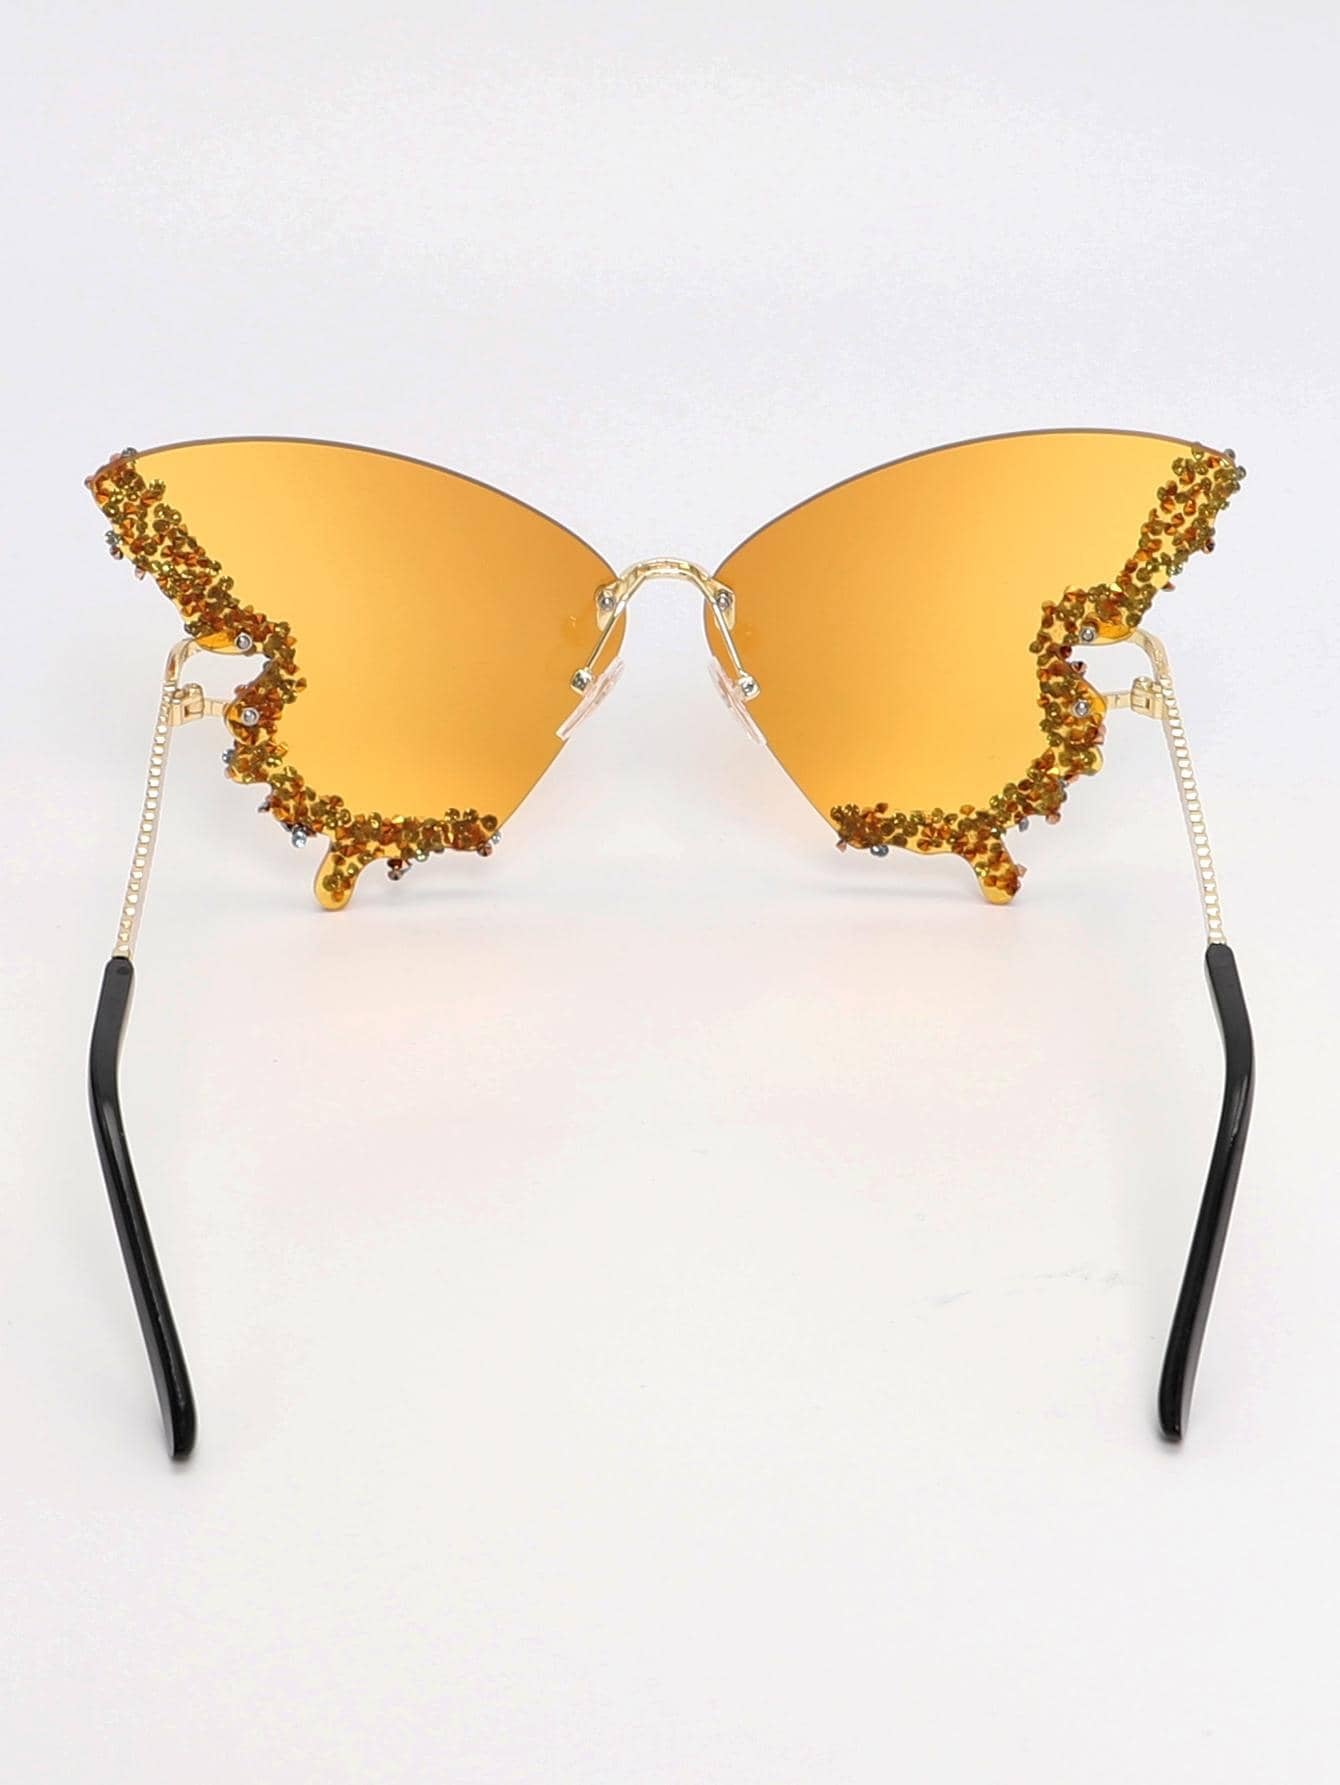 Luxury Diamond Butterfly Sunglasses for Women